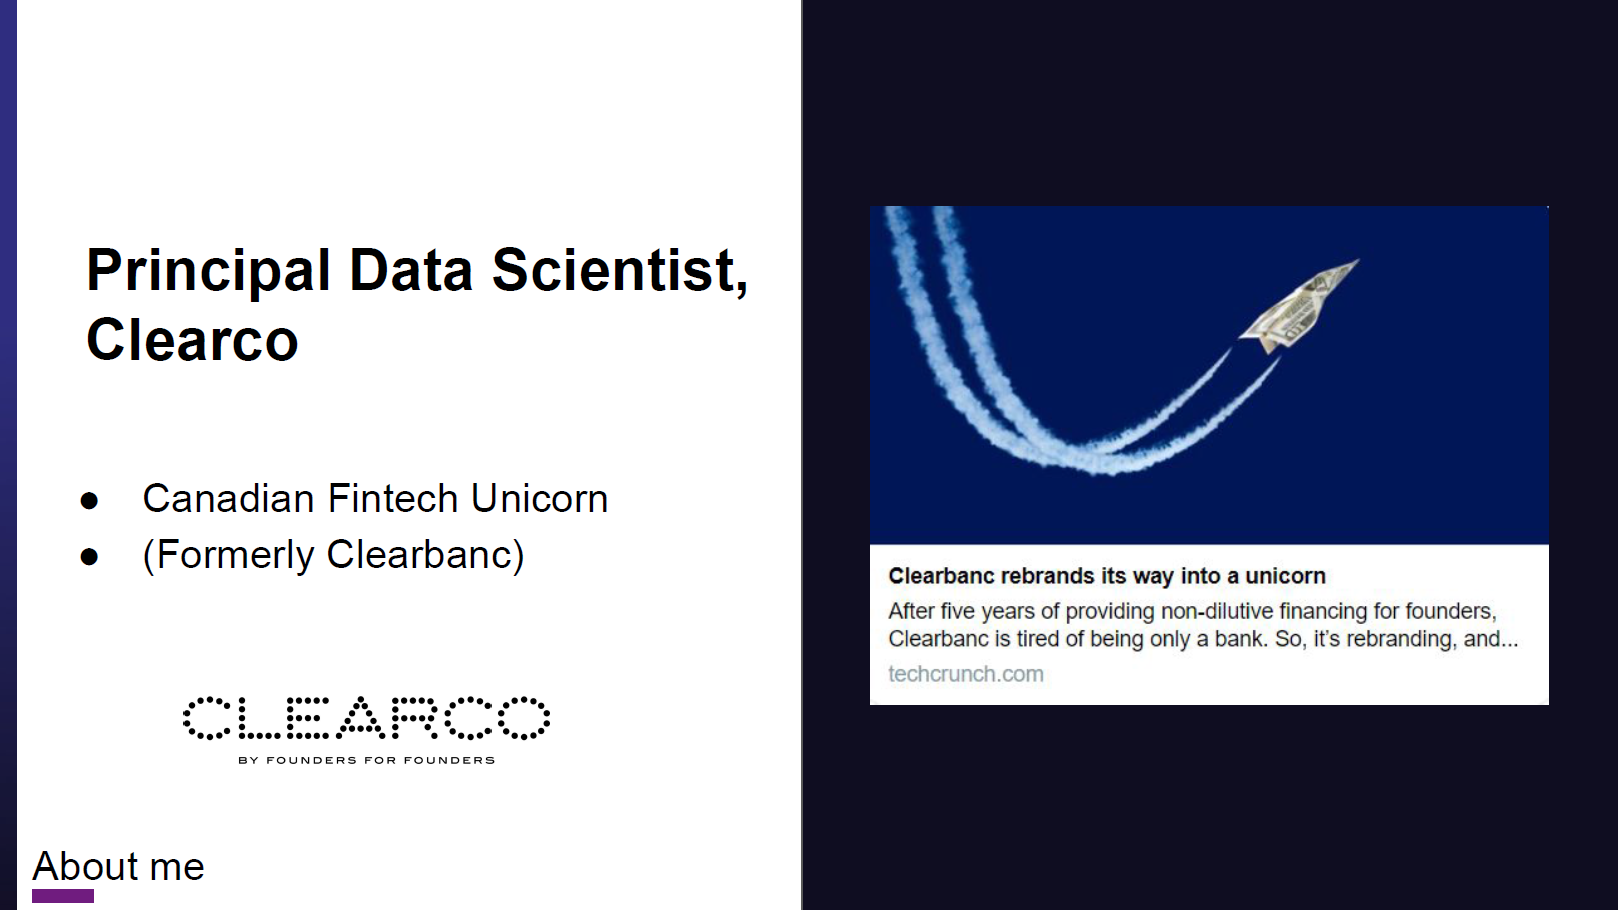 Current job title: Principal Data Scientist in FinTech unicorn company